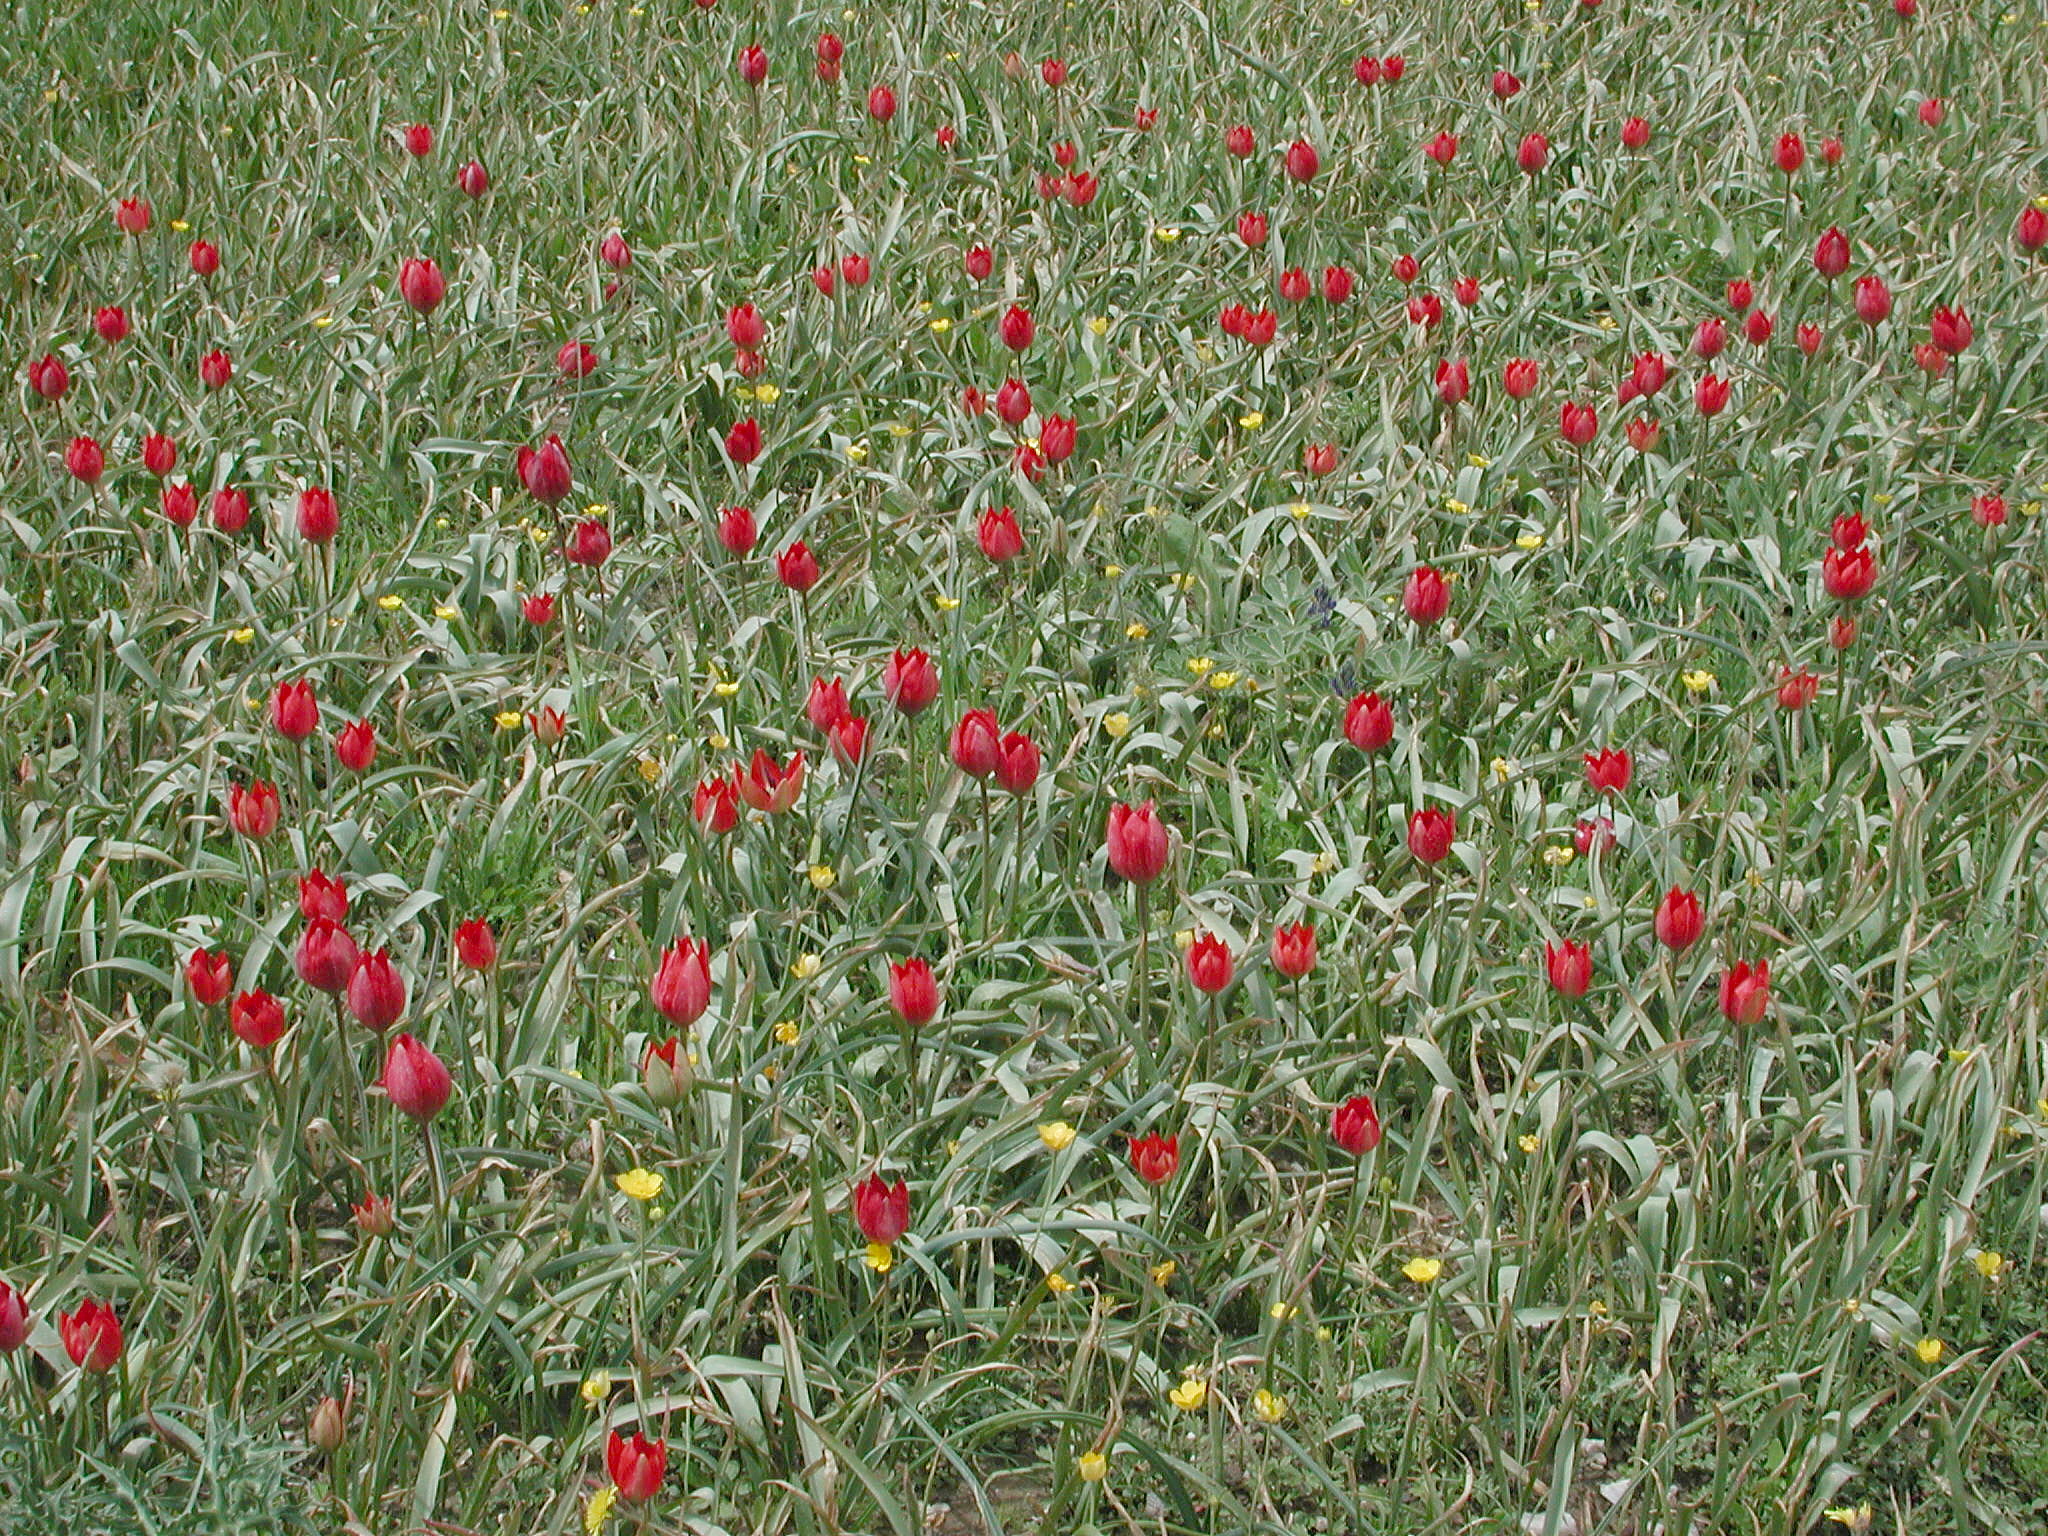 Tulipa doerfleri